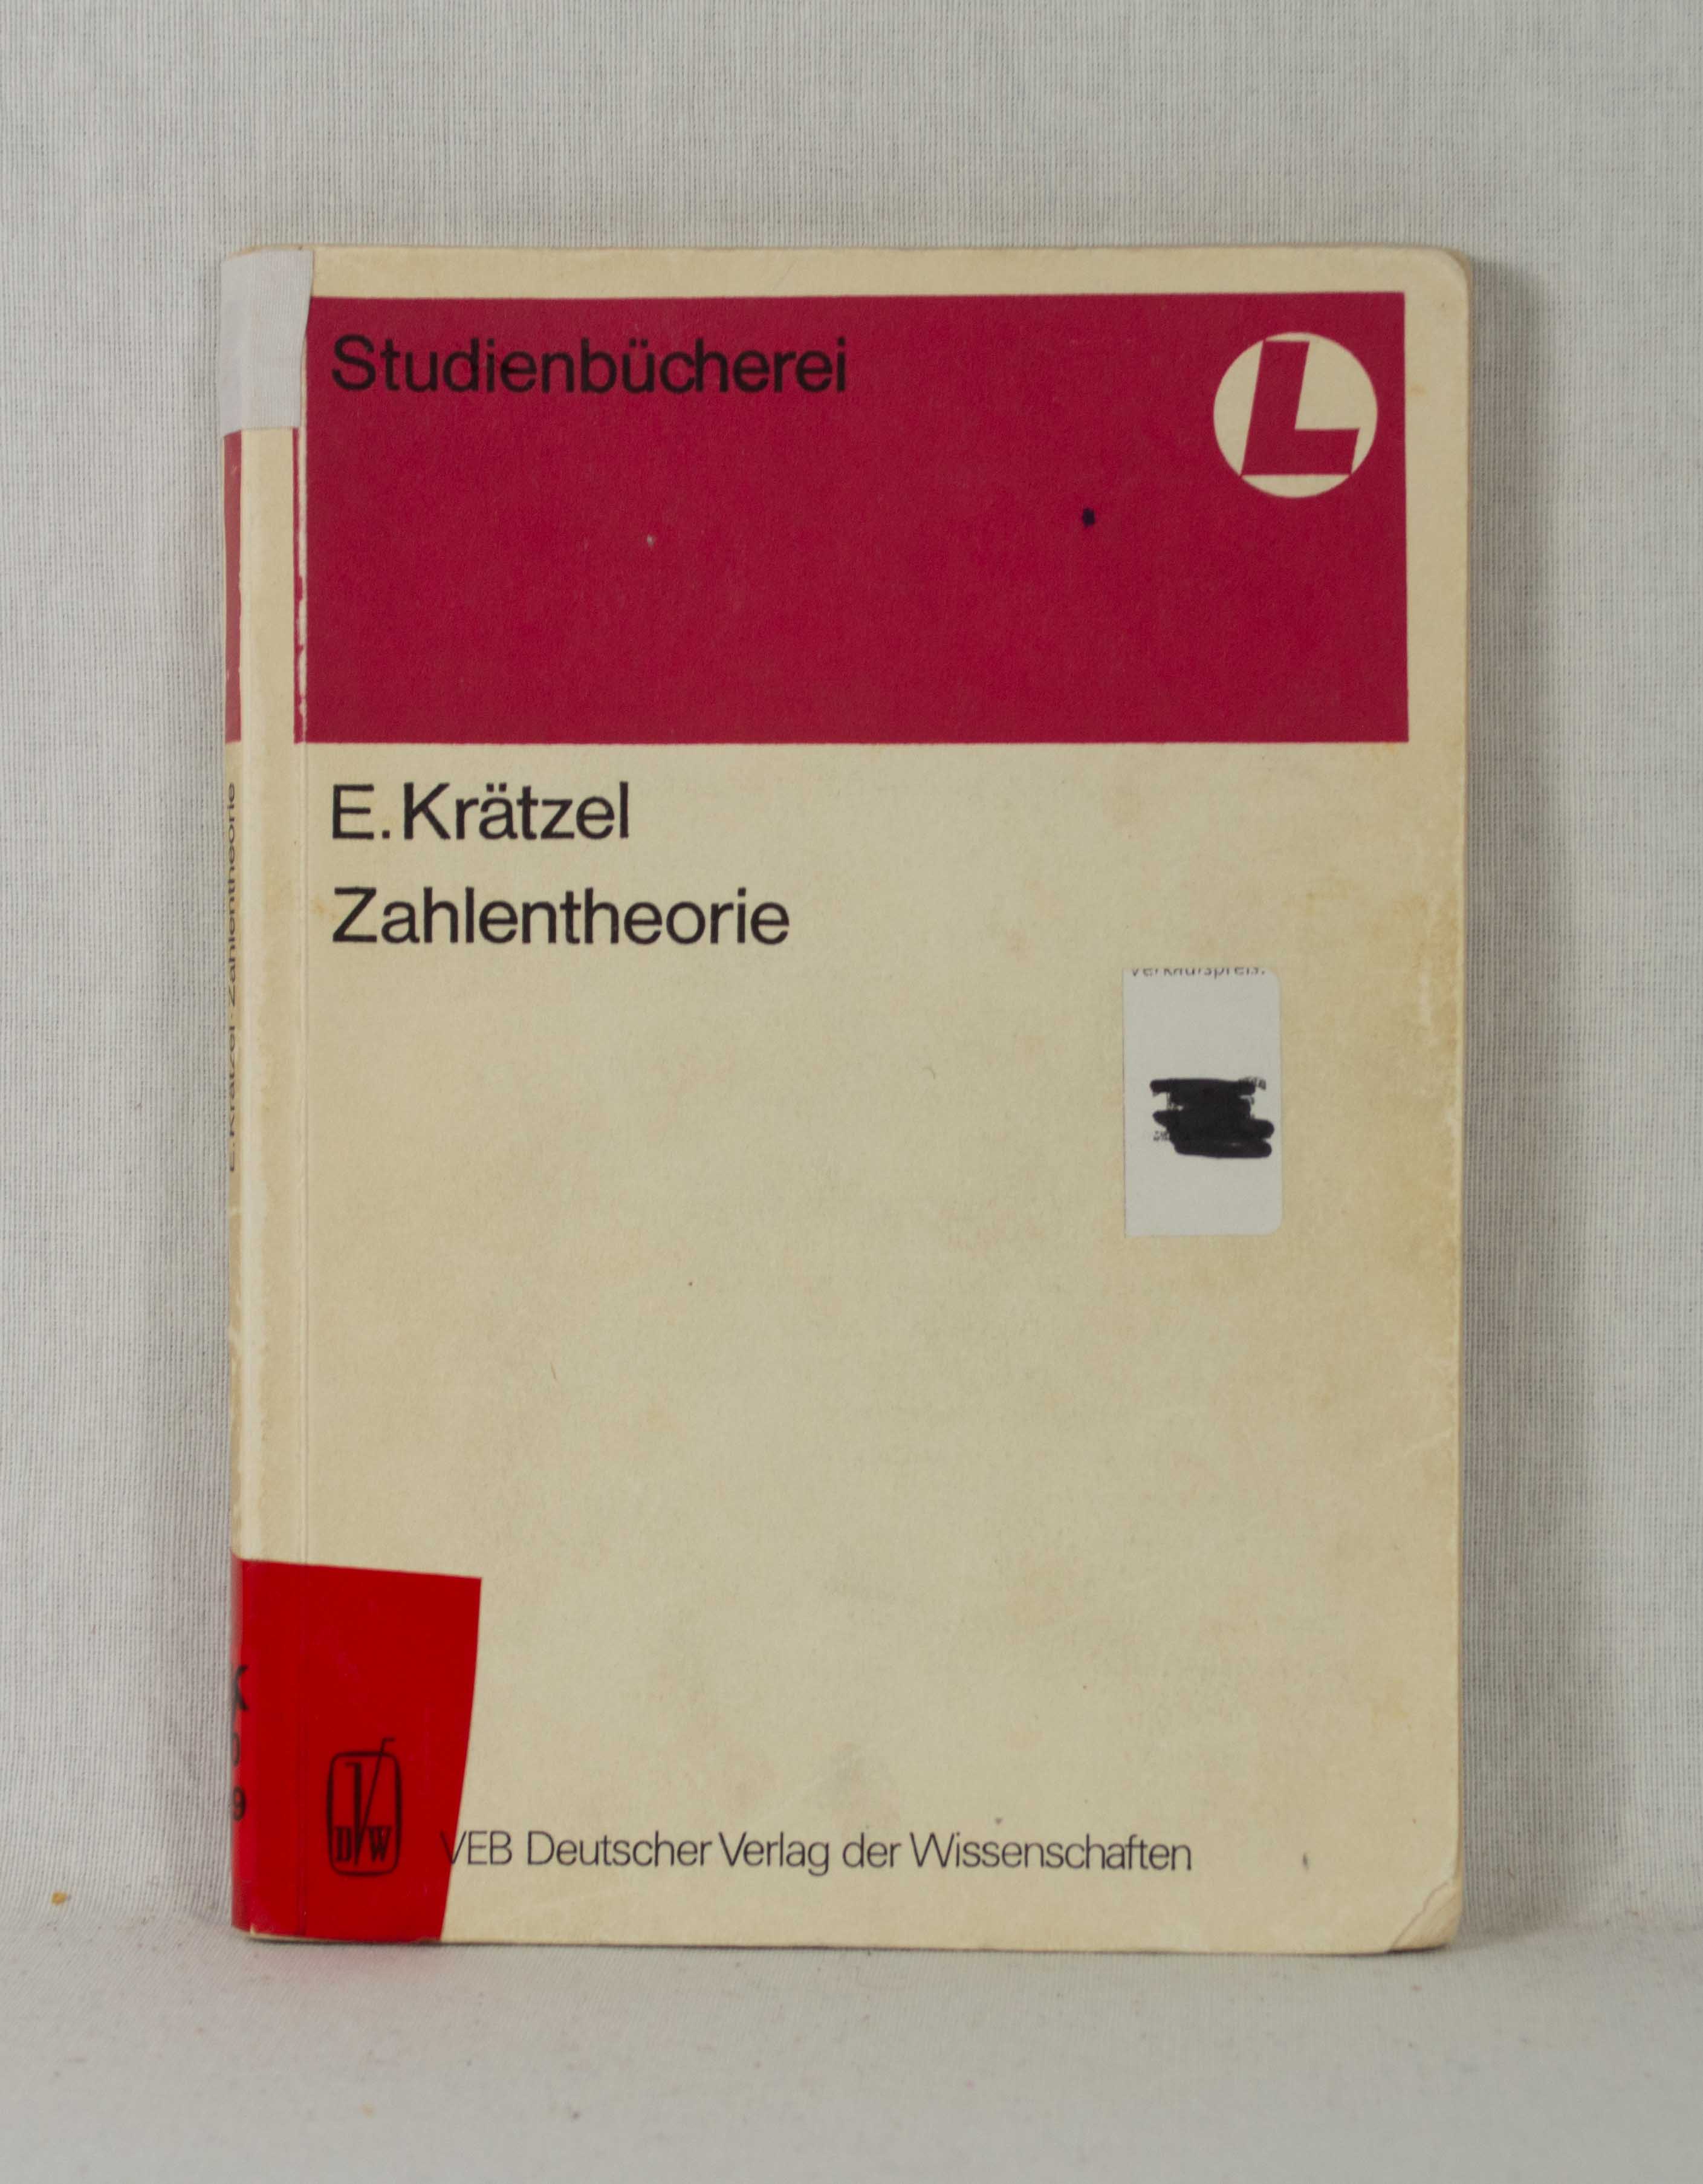 Zahlentheorie. (= Mathematik für Lehrer, Band 19 / Studienbücherei). - Krätzel, E.